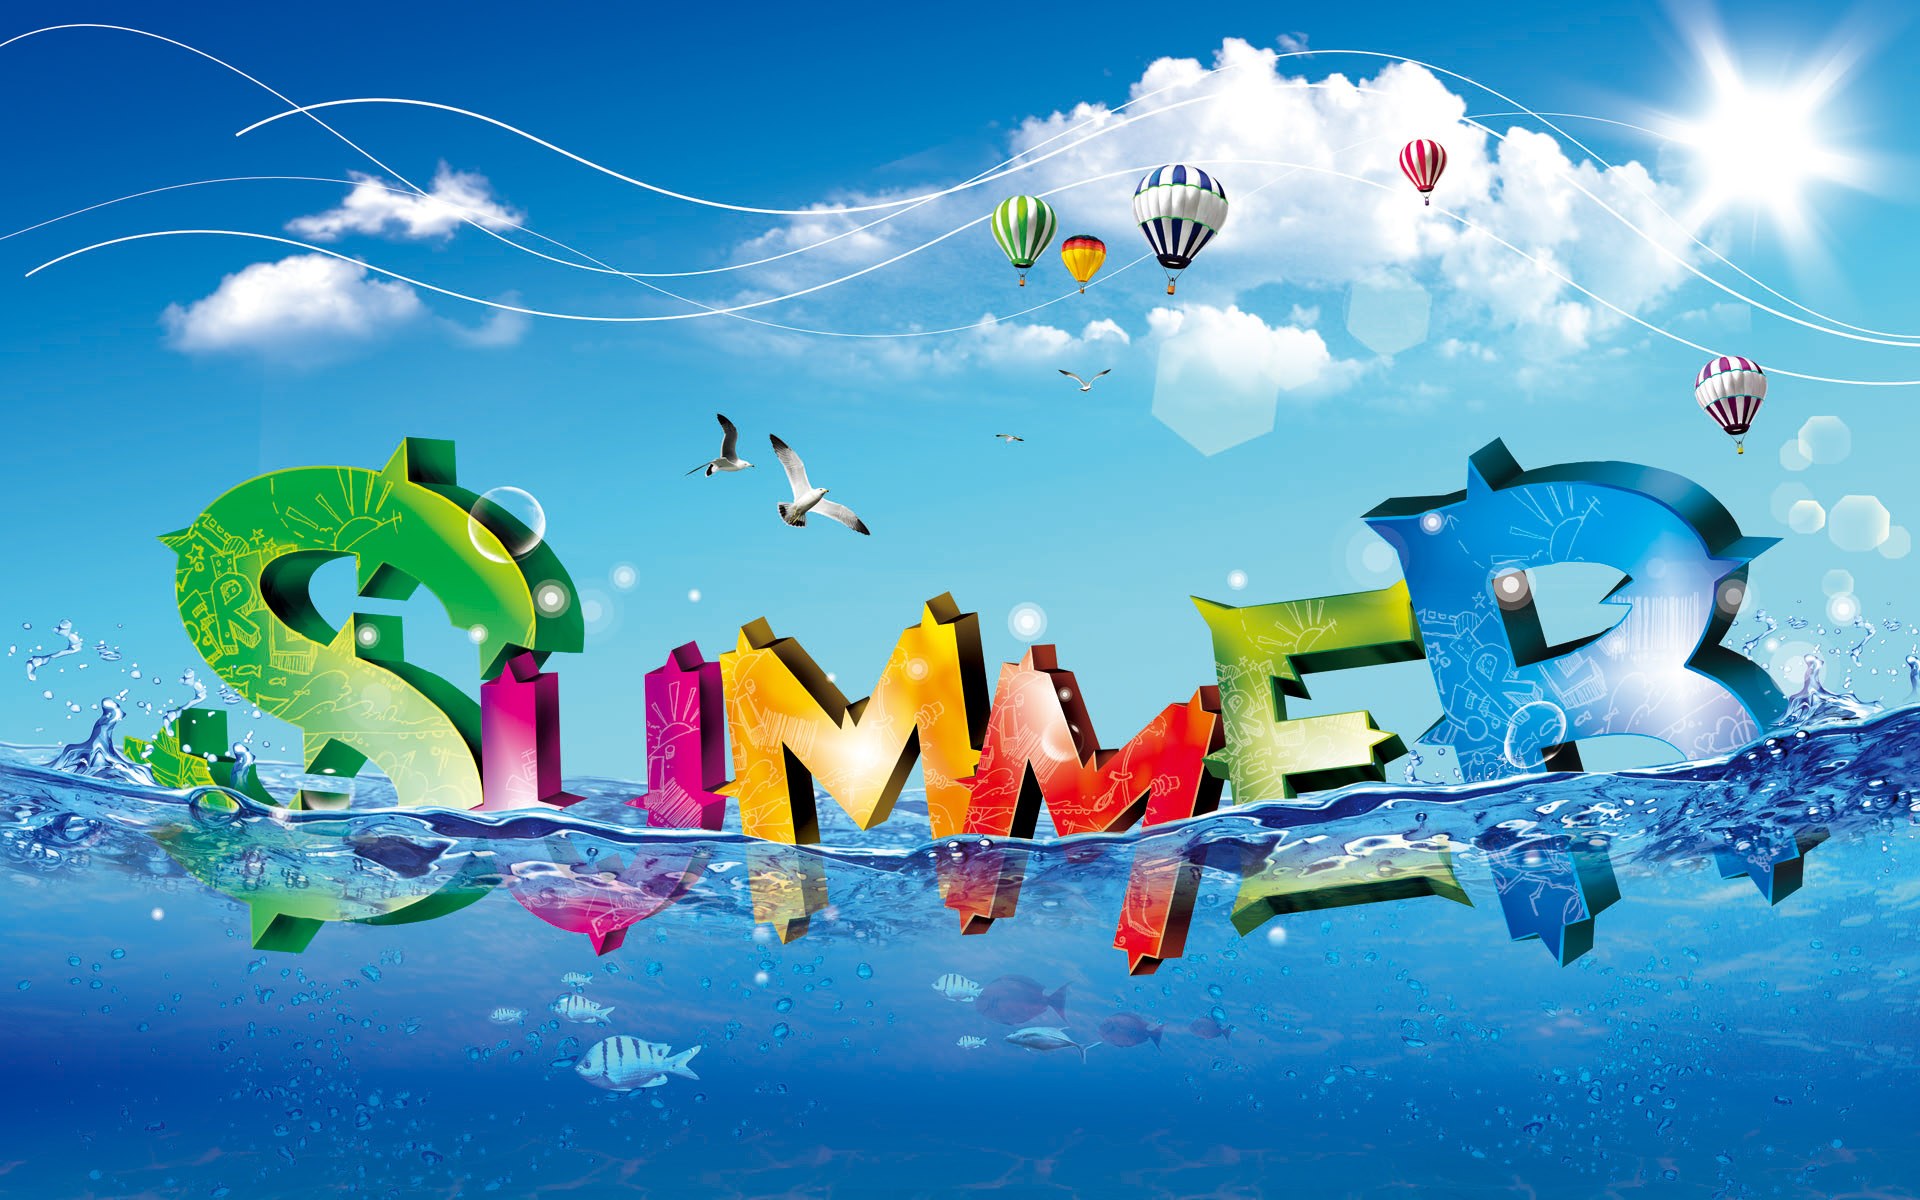 Creative Design Summer Colour Ideas Cartoon Desktop Digital Wallpaper